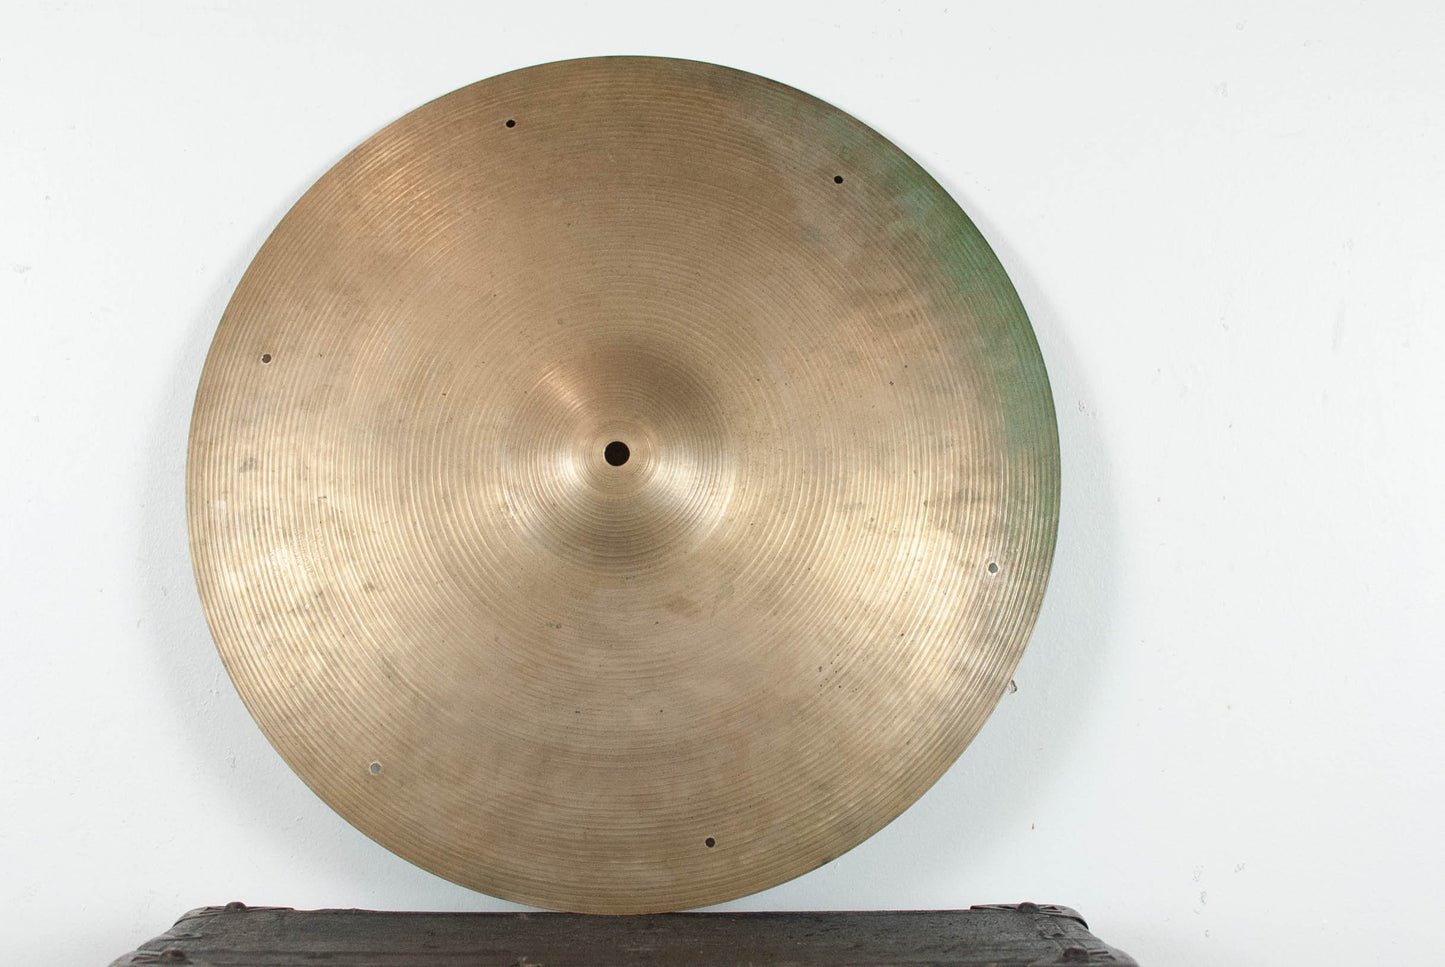 1960s Zildjian A 18" Crash Cymbal 1568g